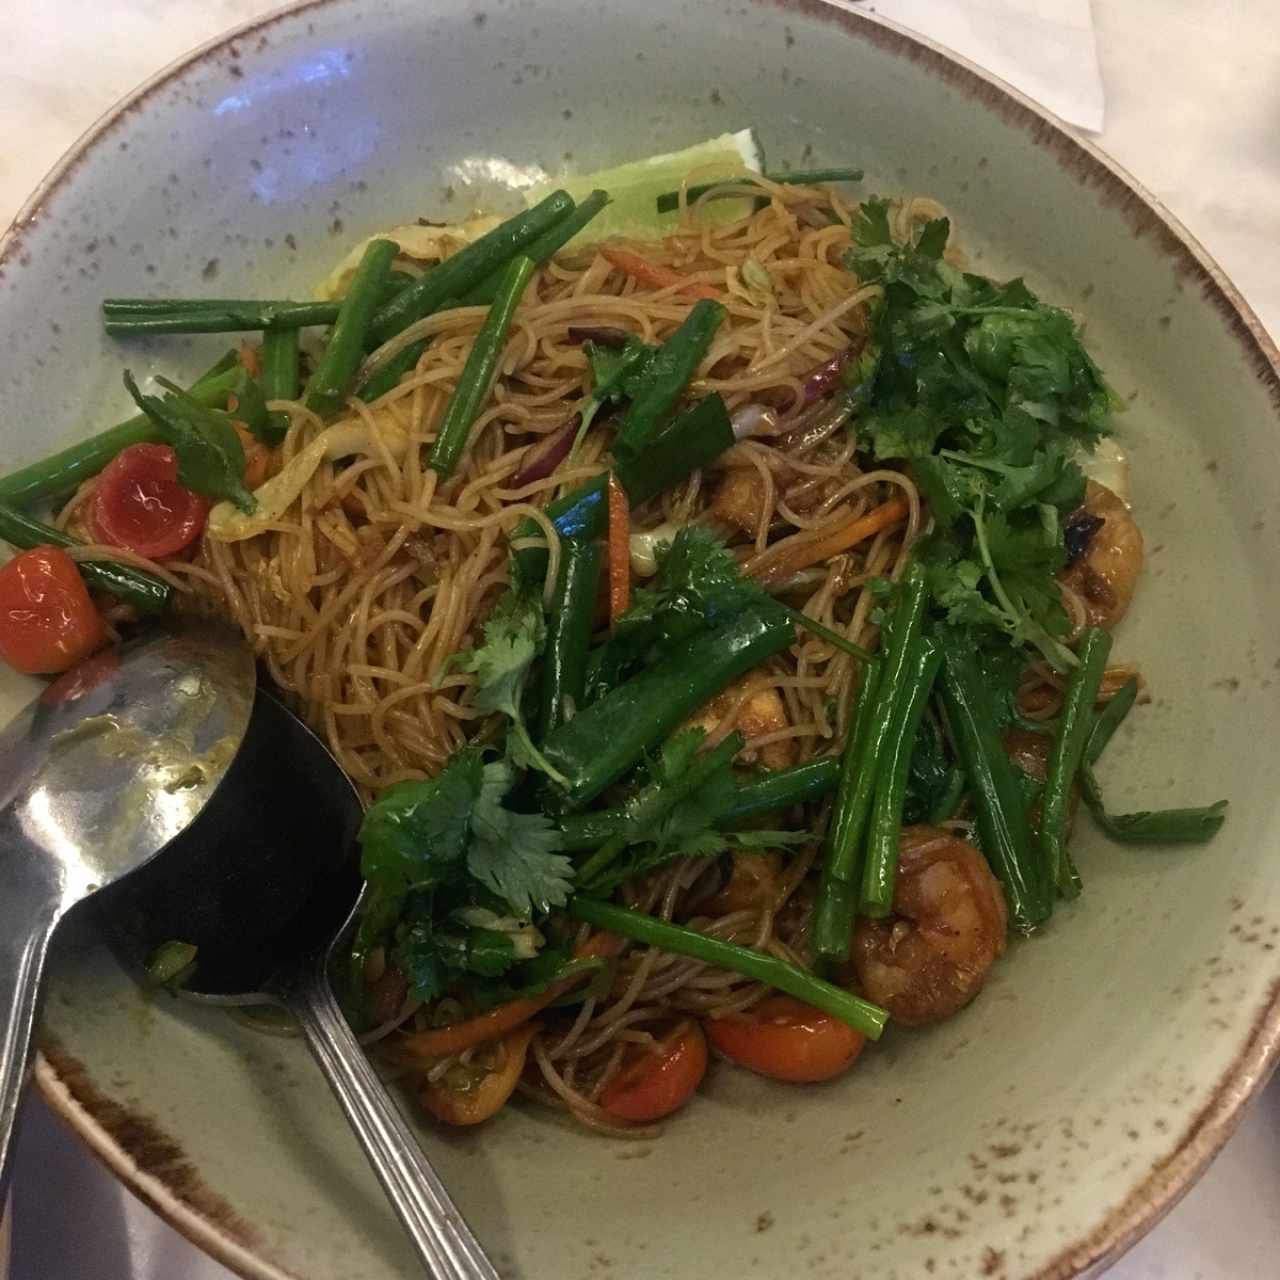 singapure noodles feast